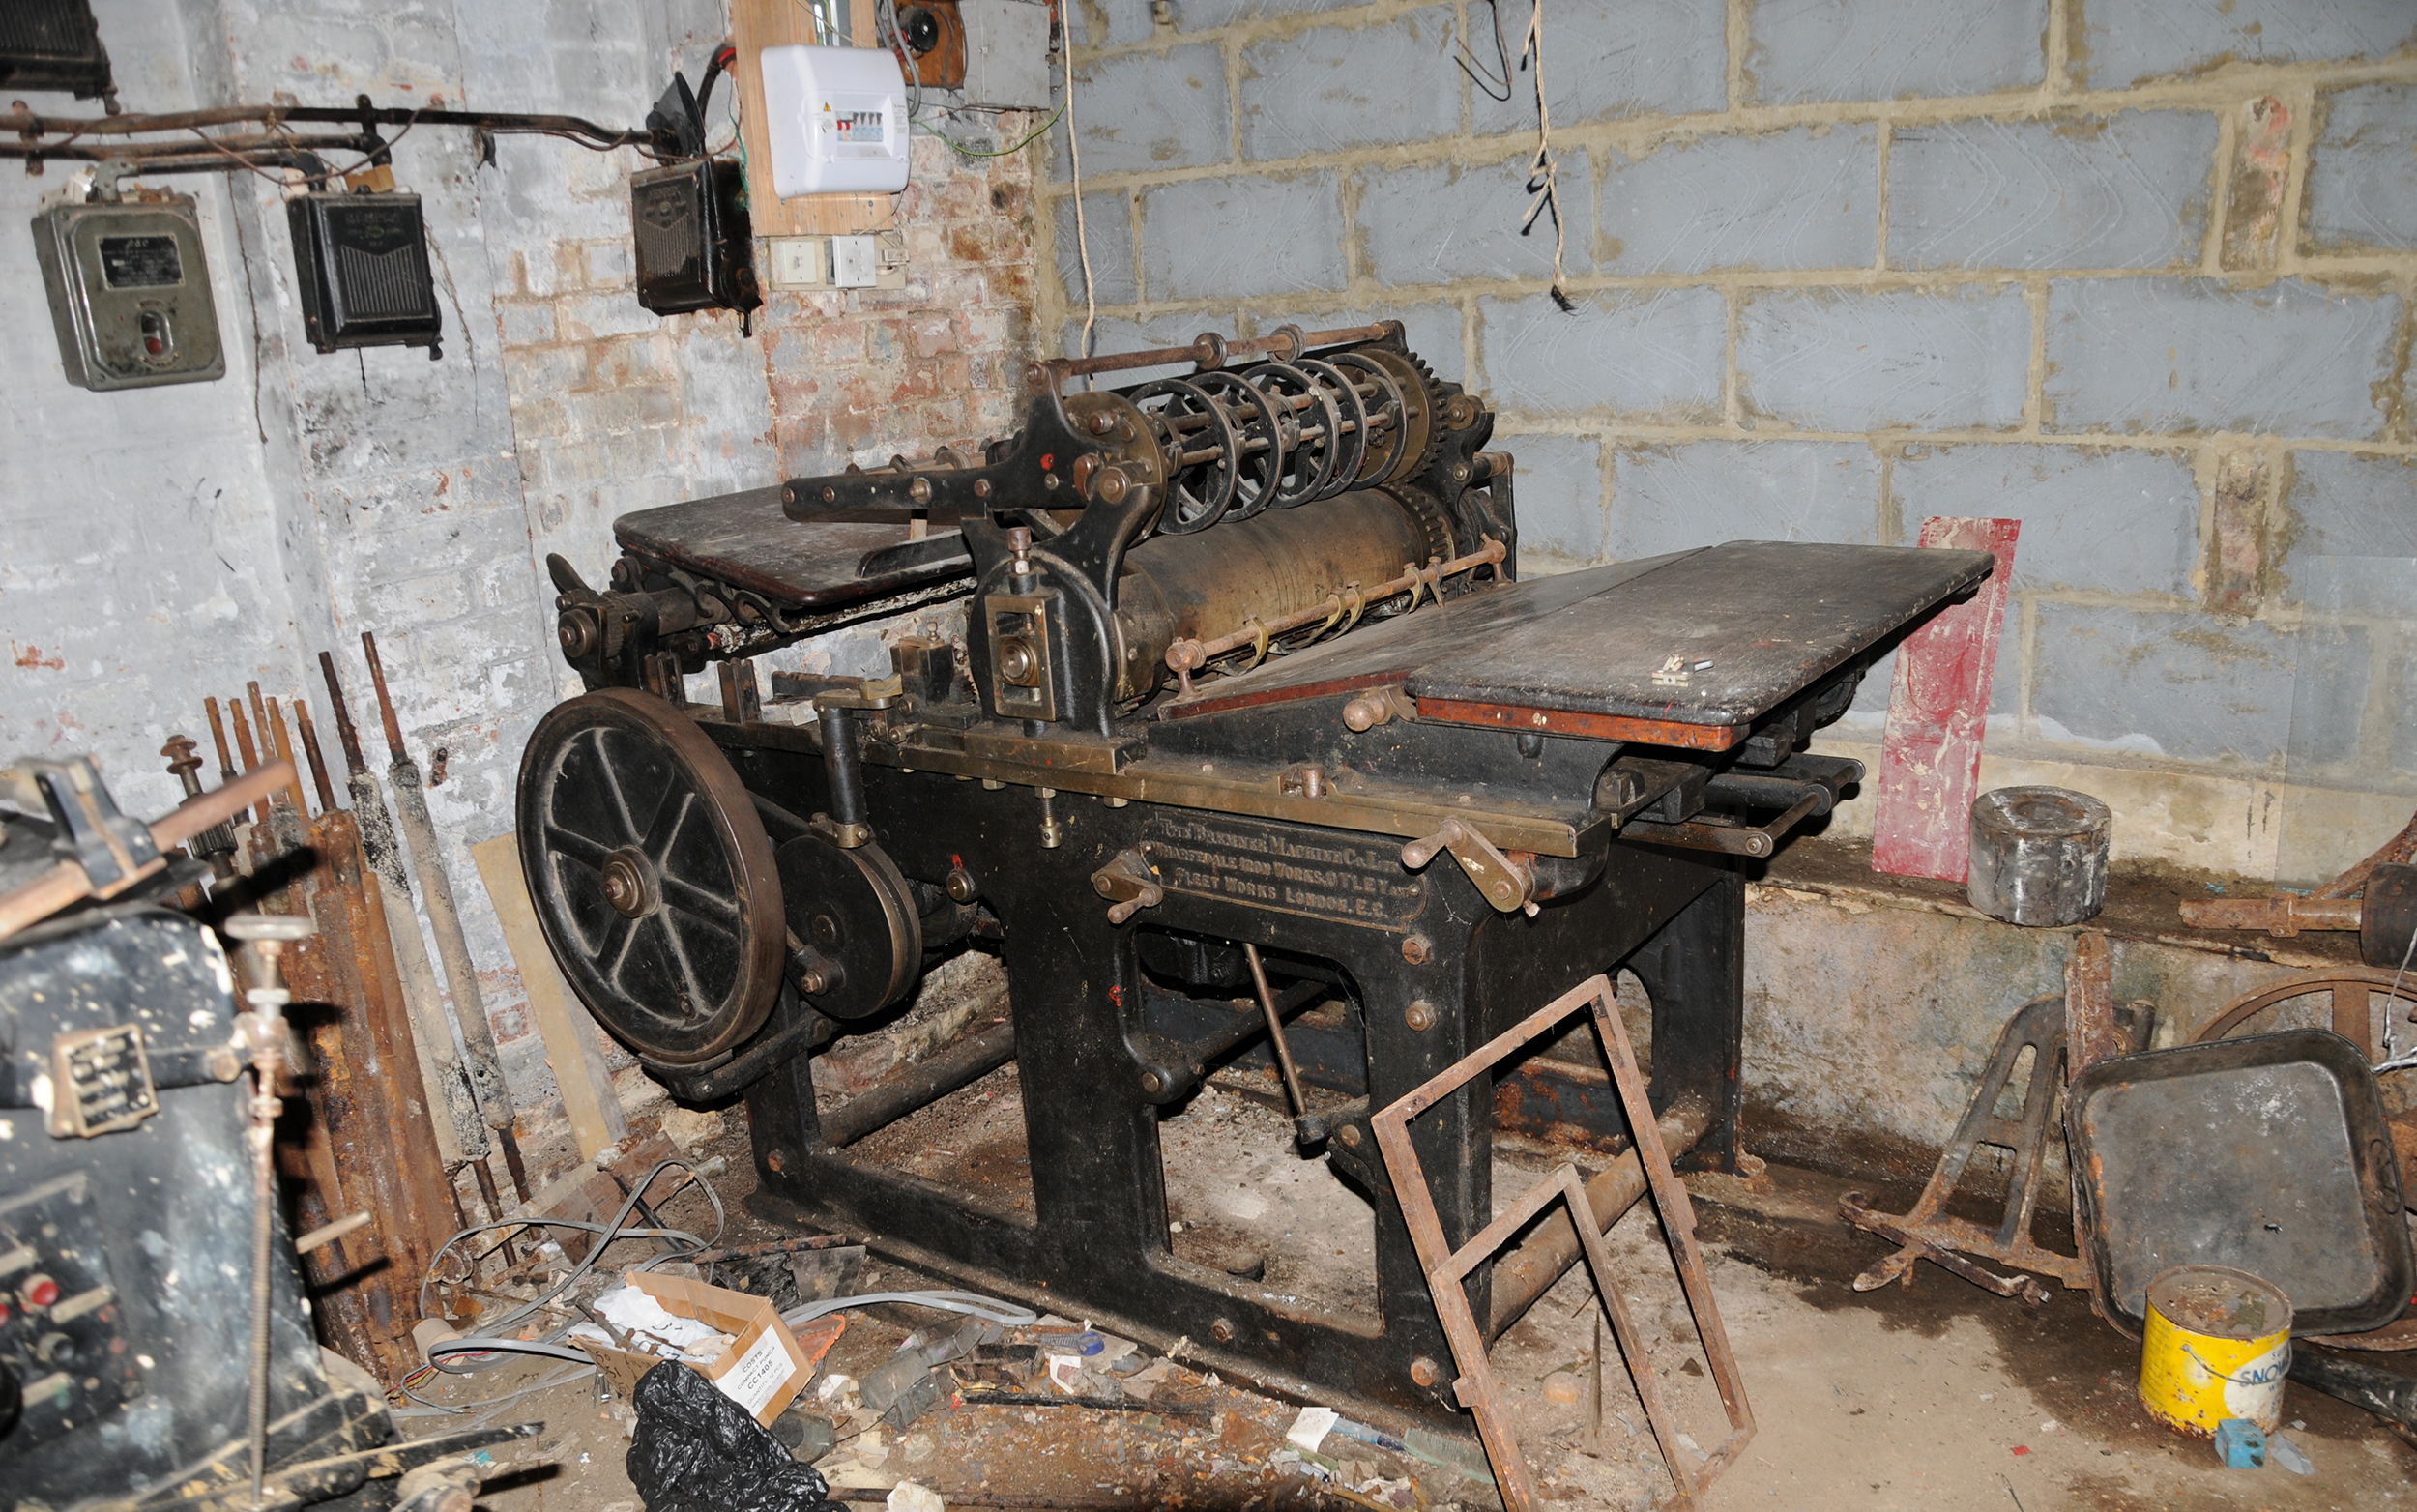 Old printing press in workshop